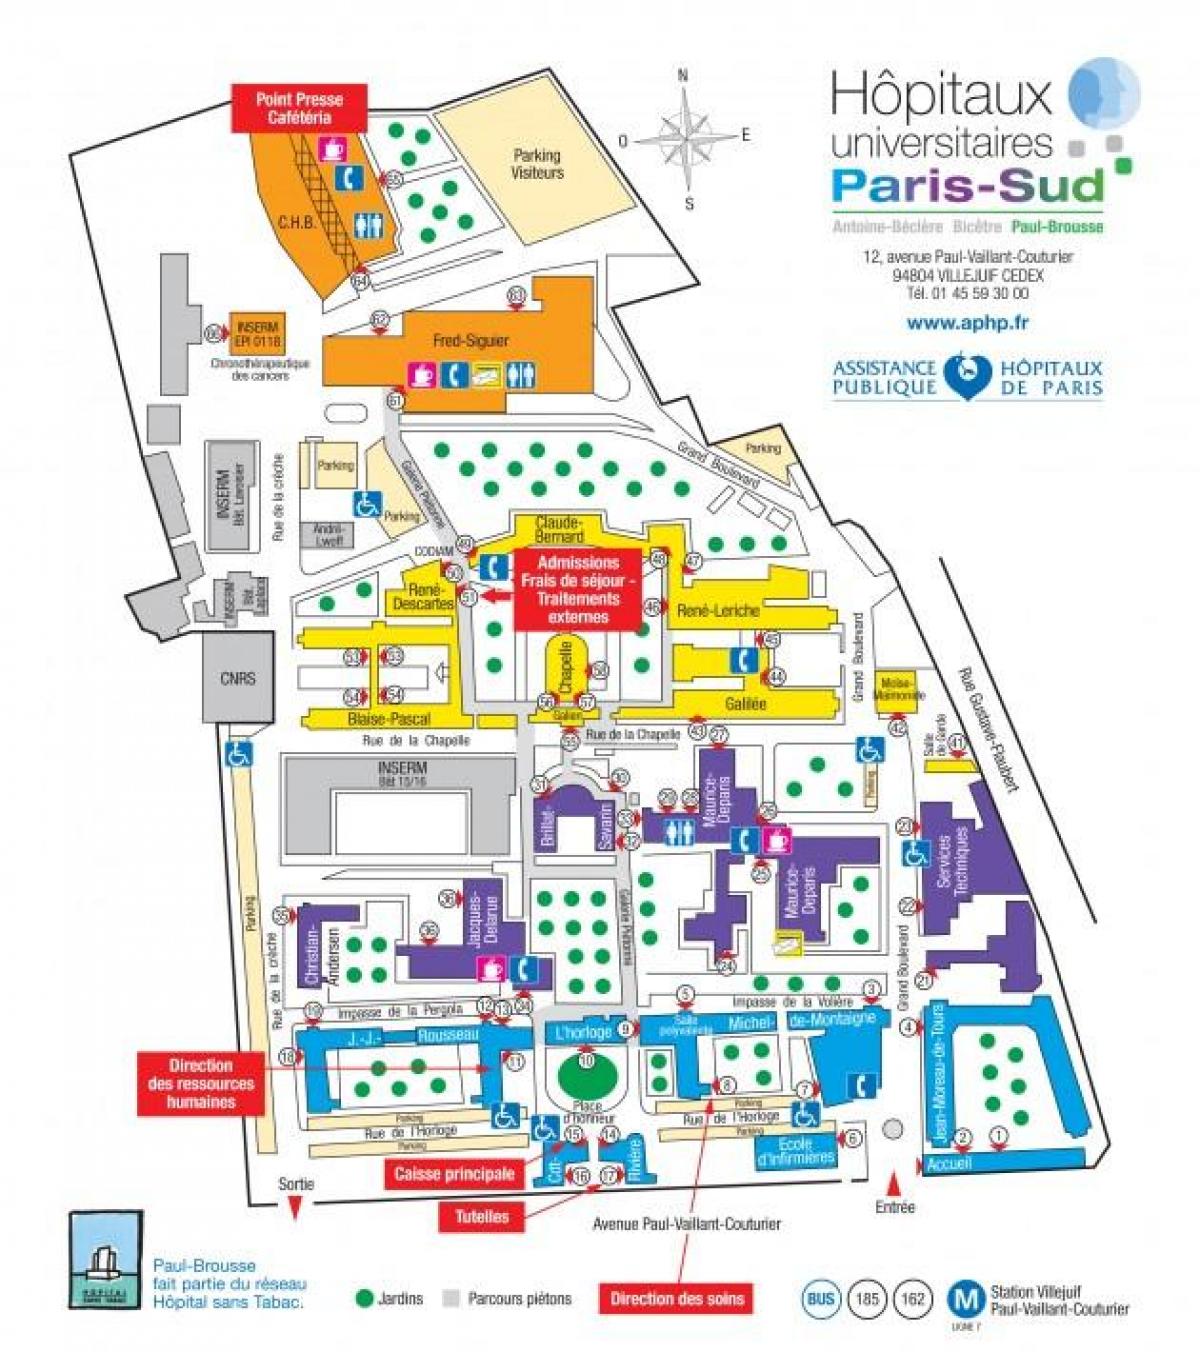 نقشہ کے پال-Brousse ہسپتال